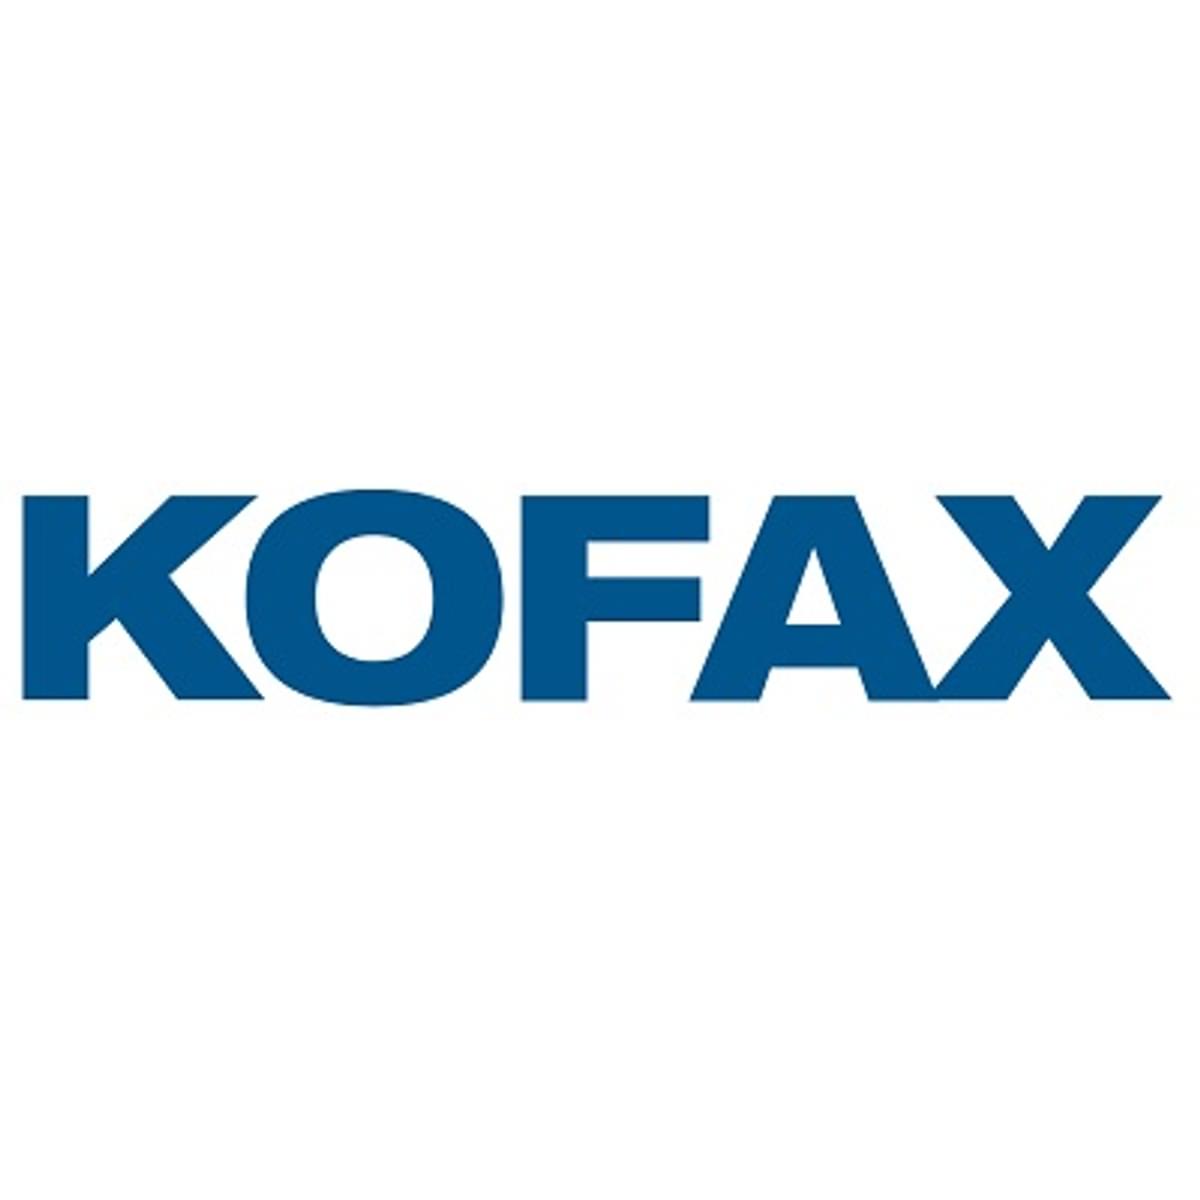 Ede zet Kofax RPA in rond aanvragen inkomenssteun vanwege corona pandemie image